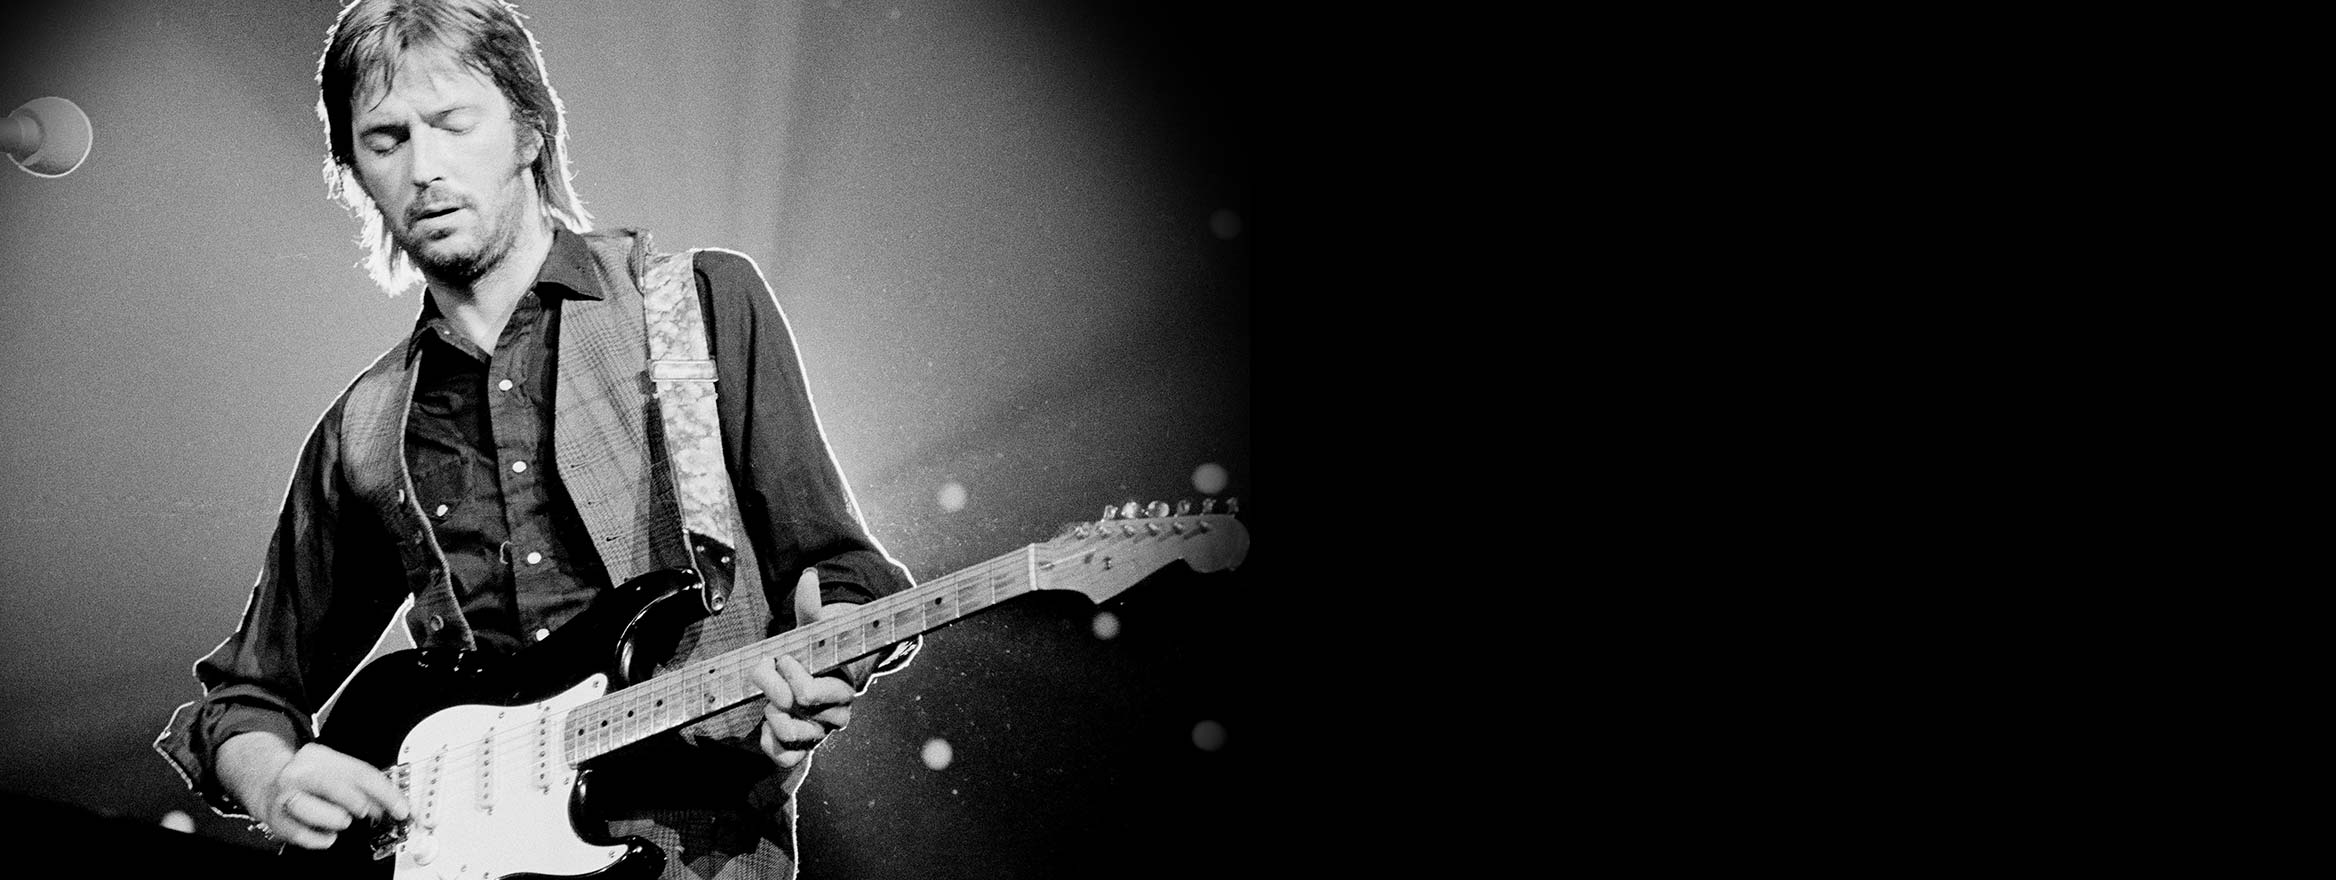 定番再入荷MOD!Fender USA Eric Clapton Stratocaster エリック・クラプトン・モデル/ブラッキー ギブソン335フェンダーカスタムショップprsストラト フェンダー